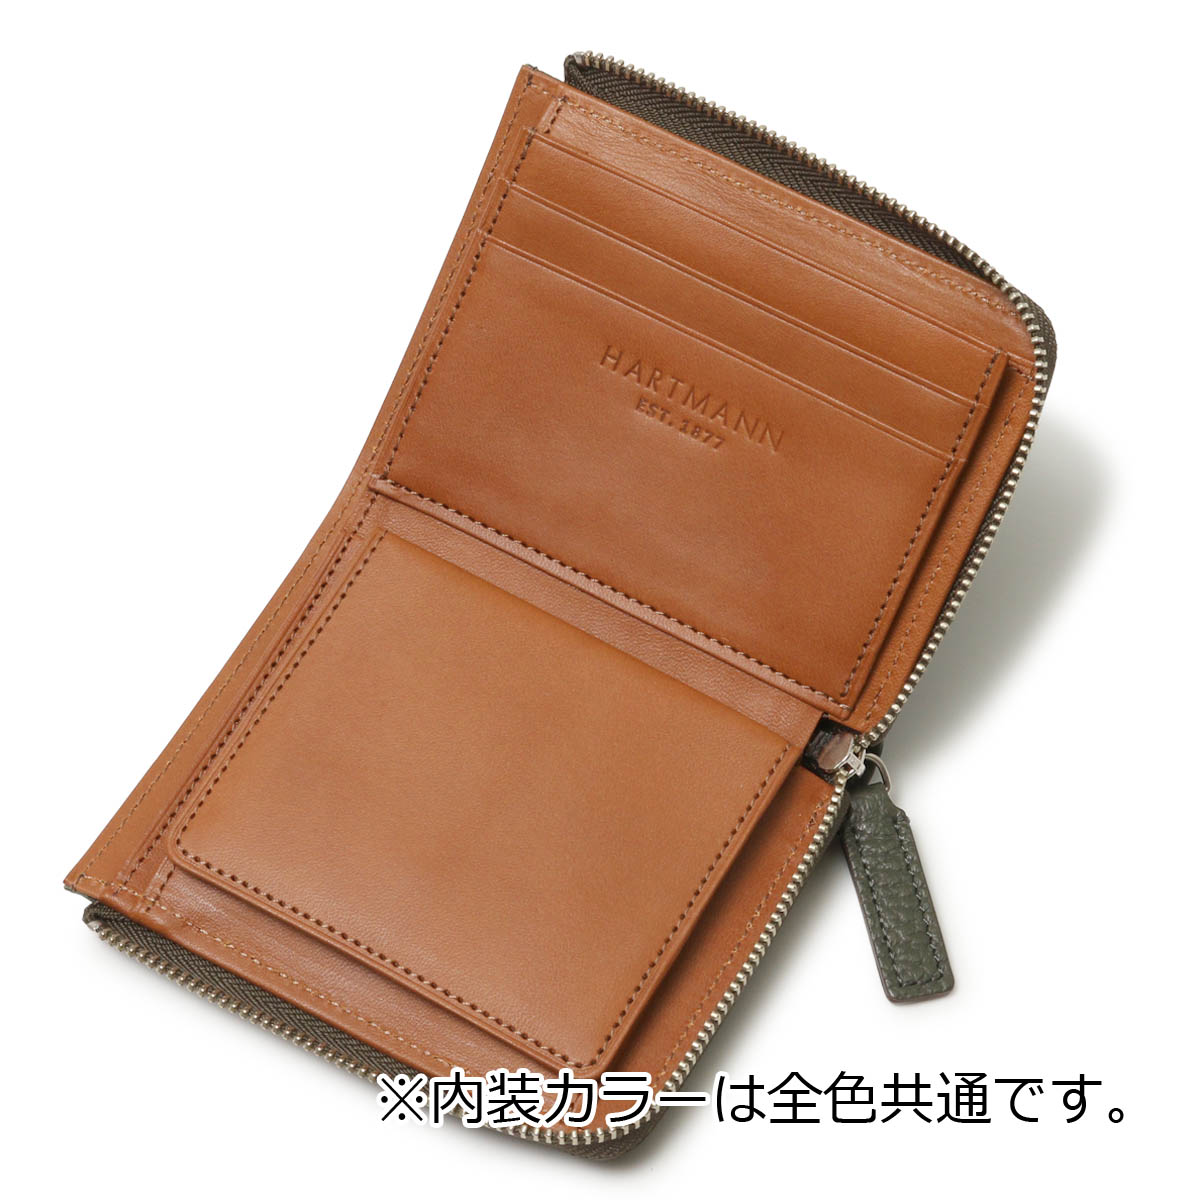 ハートマン 財布 二つ折り 本革 メンズ 日本製 142682 グレンデールSLG 